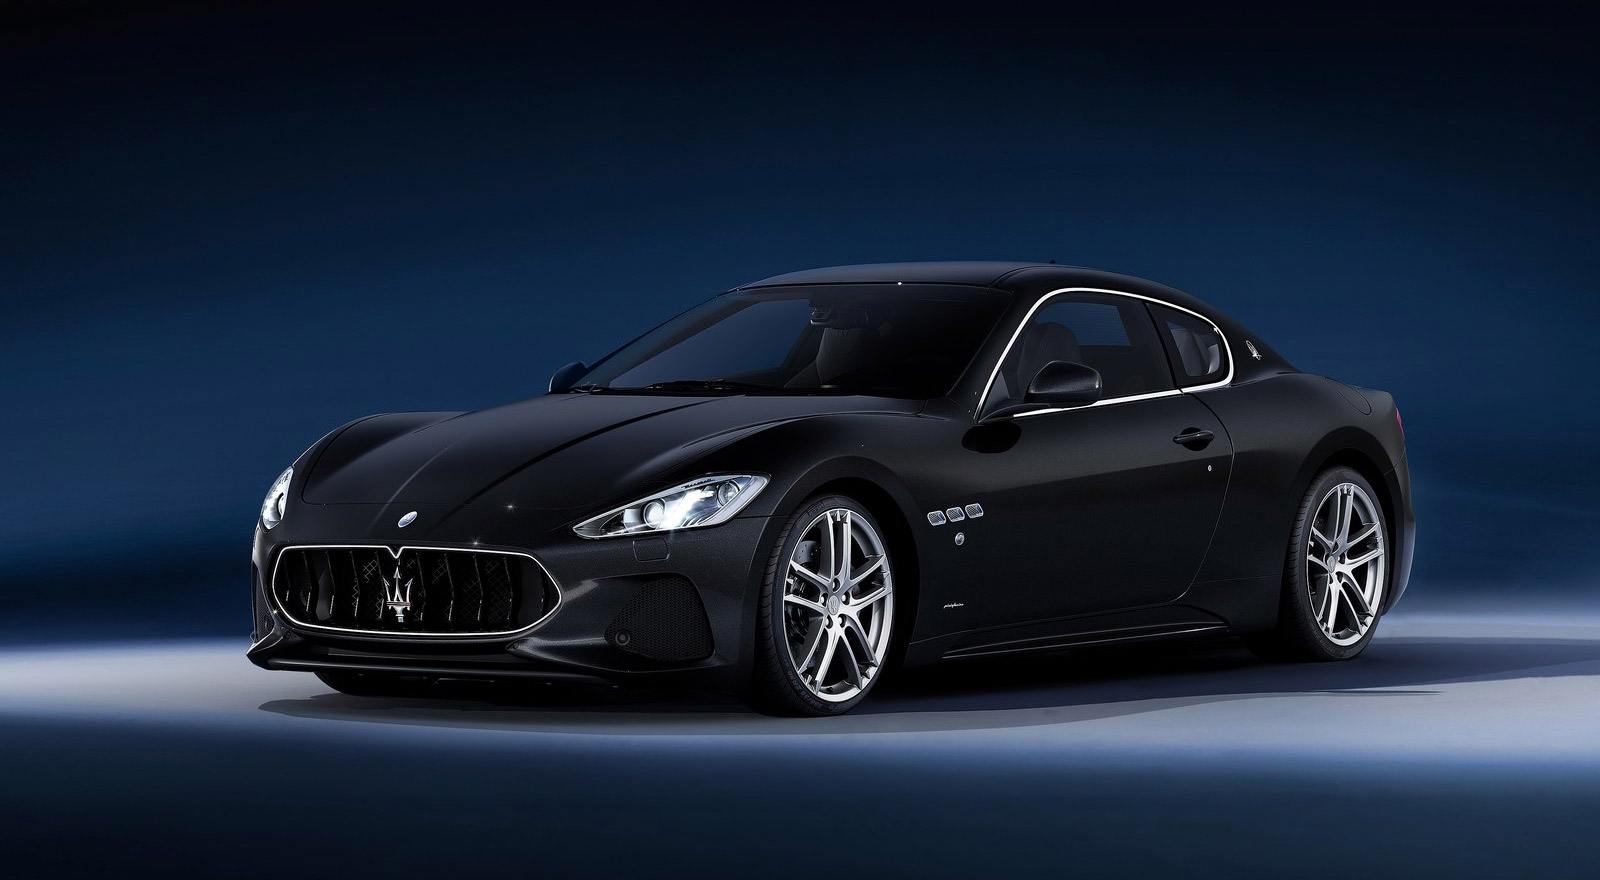 Maserati GranTurismo blir eldriven – så här låter den